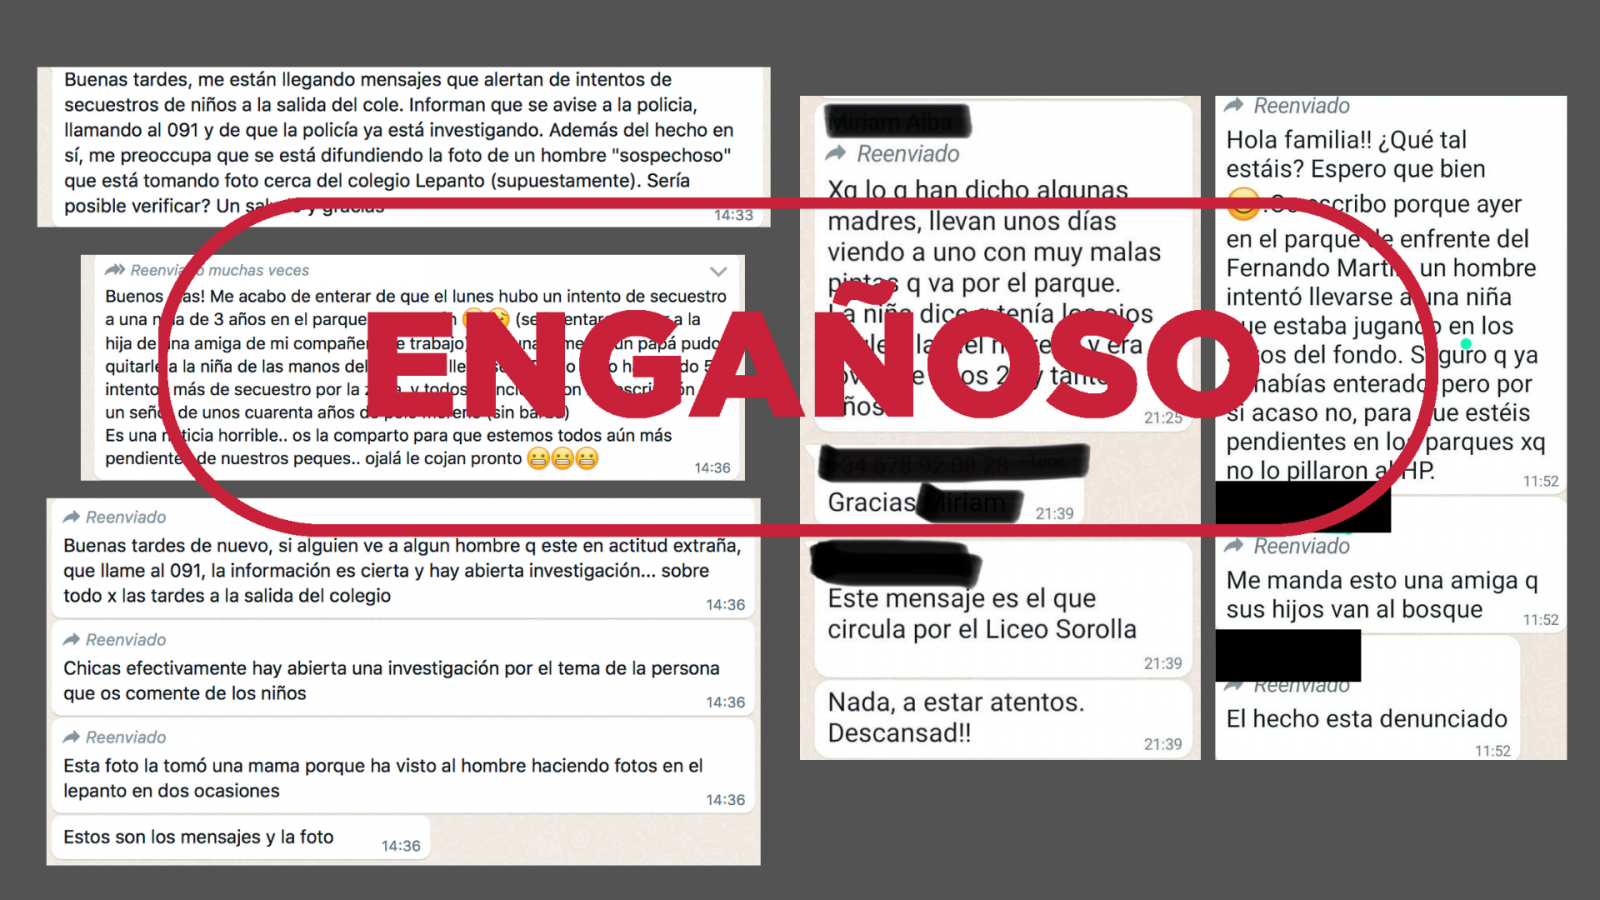 Captura de mensajes de WhatsApp que alertan sobre supuestos intentos de secuestro en Madrid, con el sello Engañoso